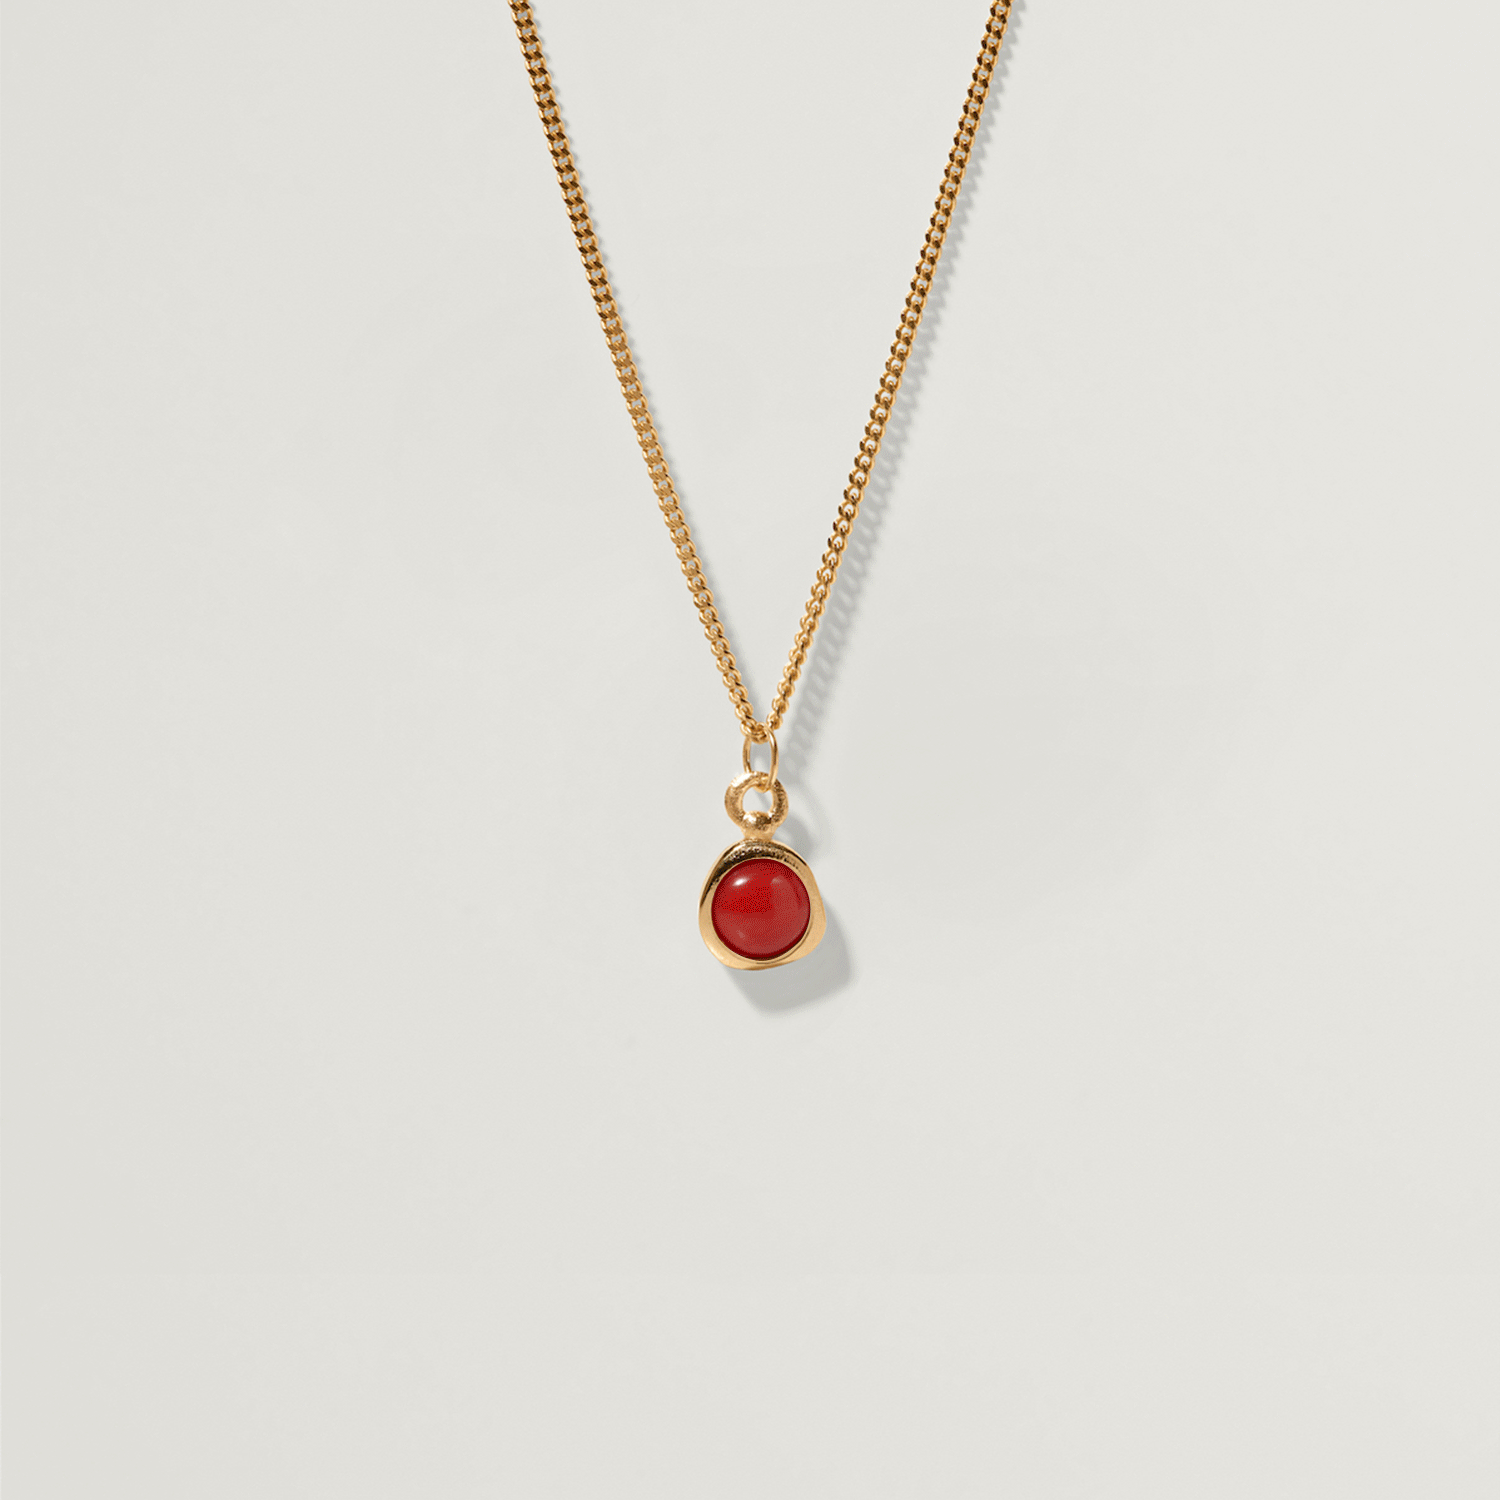 Zodiac Birthstone Necklace